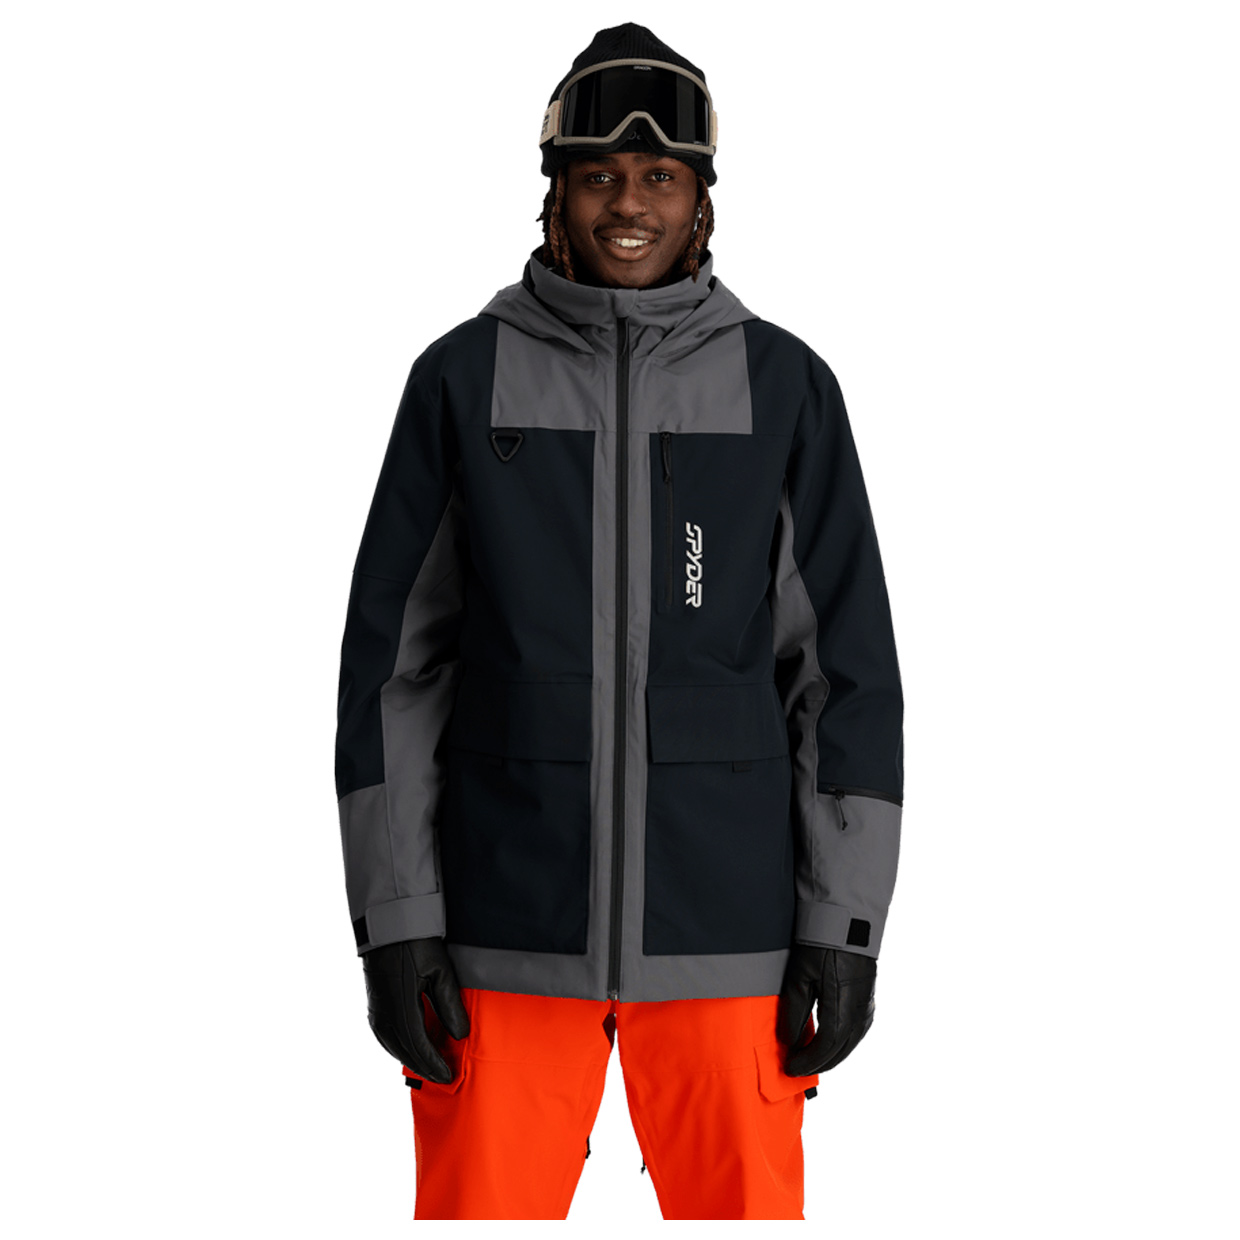 Herren Wintersportjacke Field Jacket